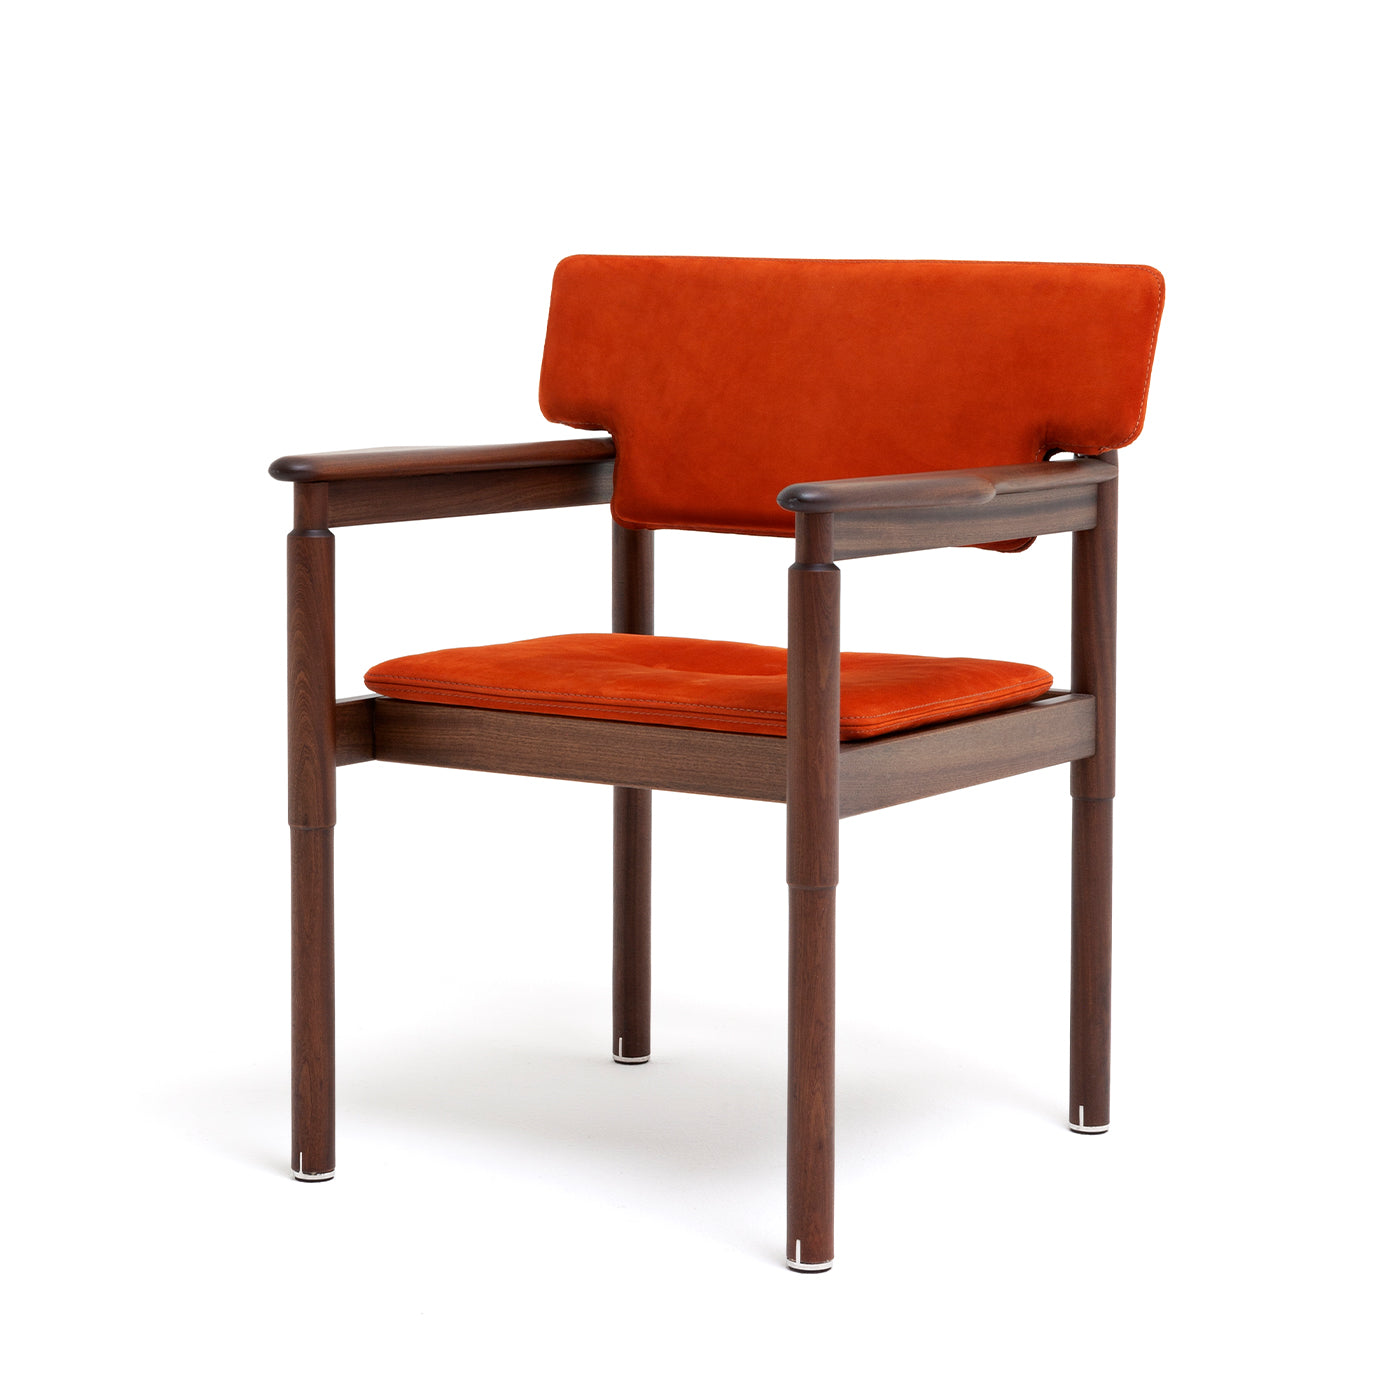 10th Vieste Chair by Massimo Castagna - Alternative view 5